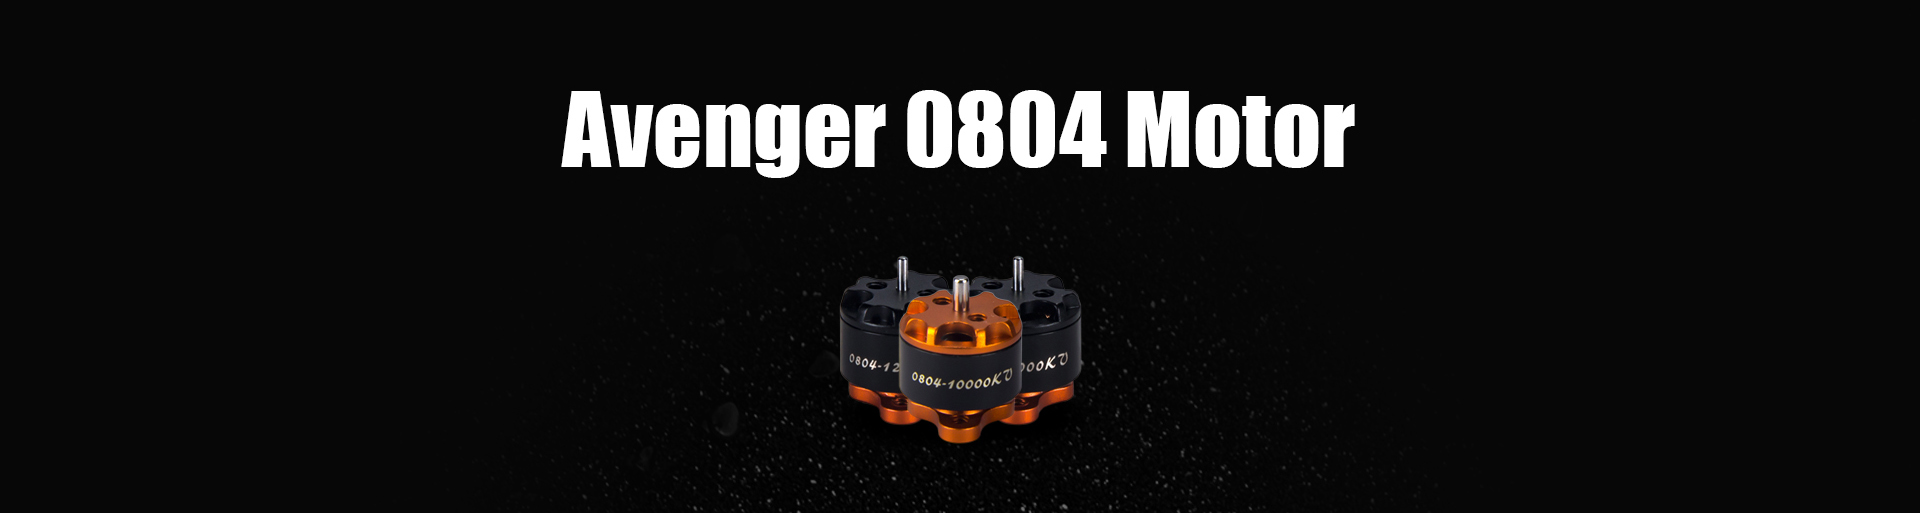 Avenger 0804 Motor